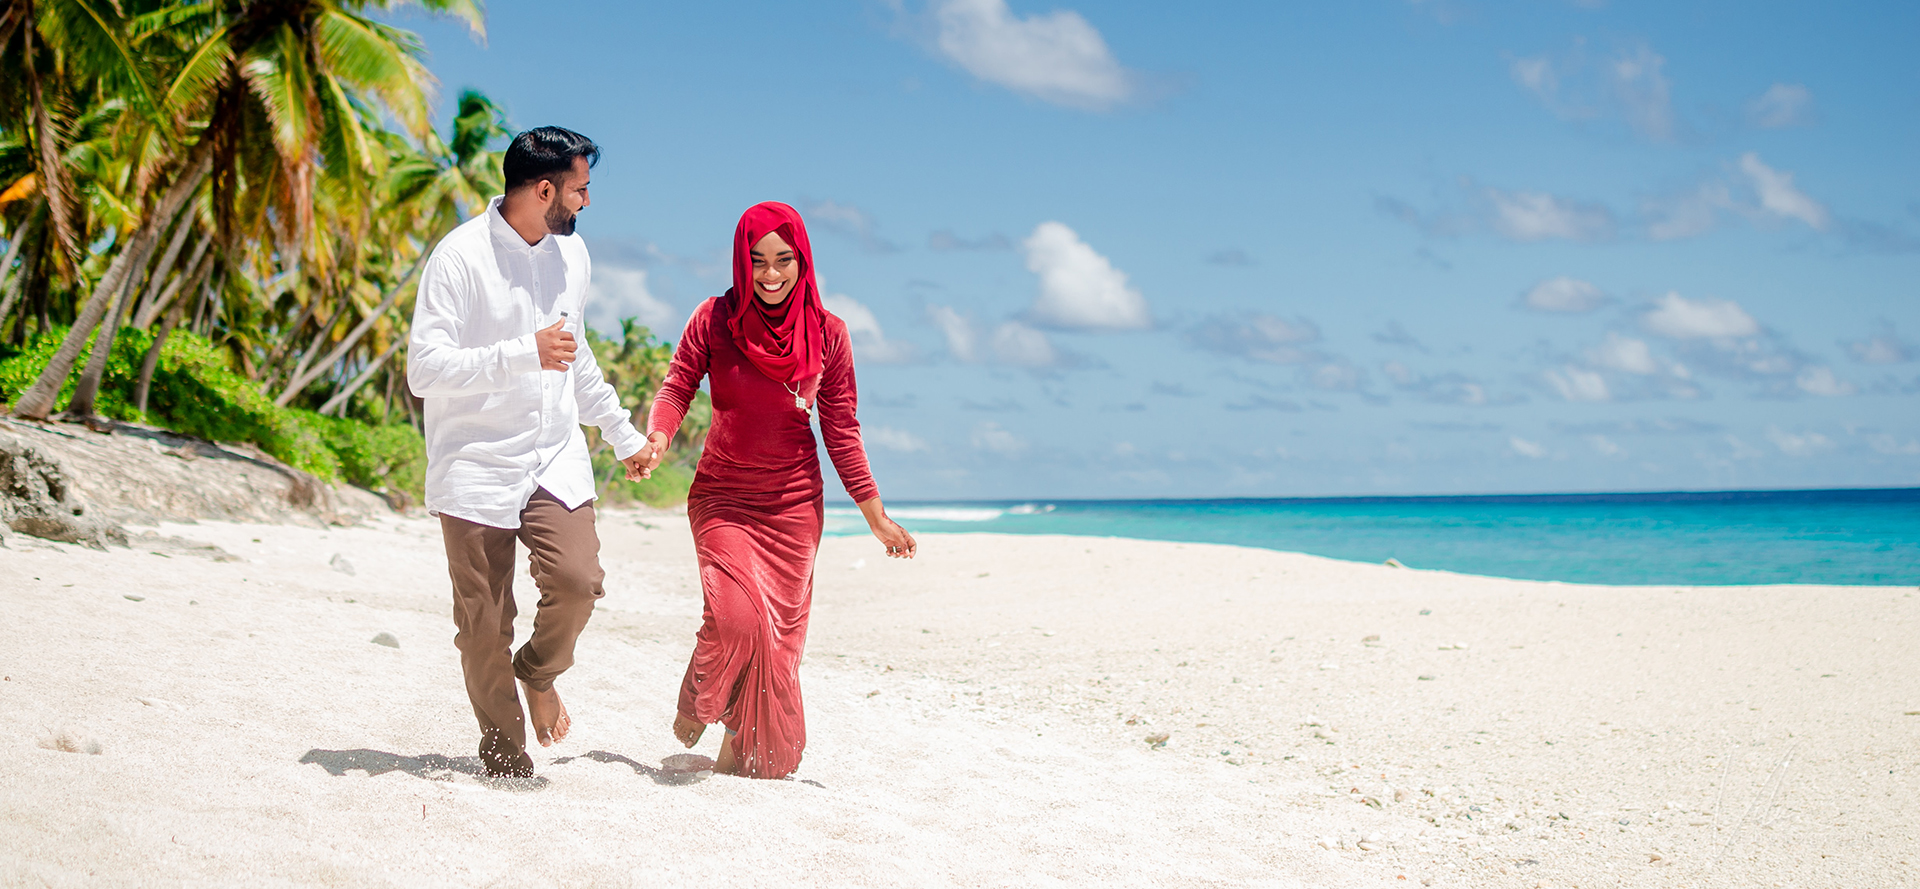 Singoli arabi ad un appuntamento passeggiano sulla spiaggia.